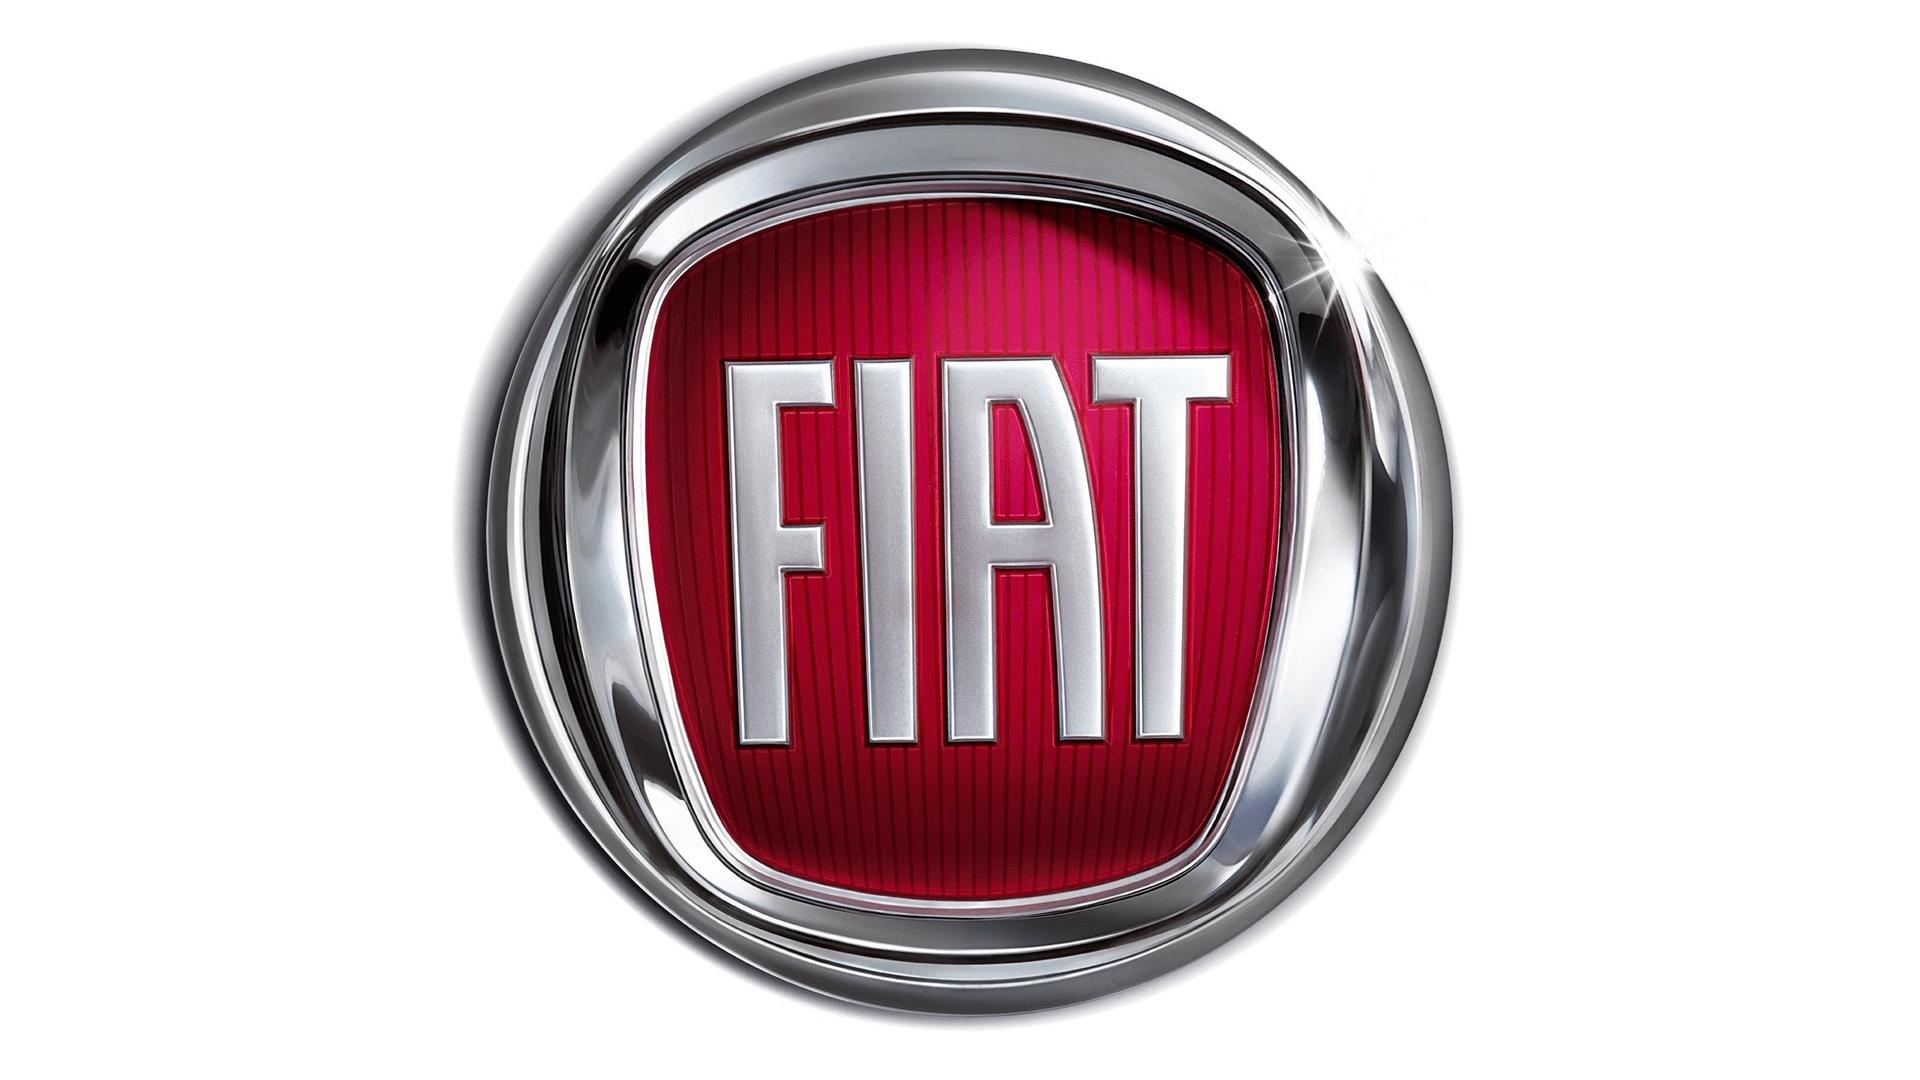 Fiat-logo-2006-1920x1080